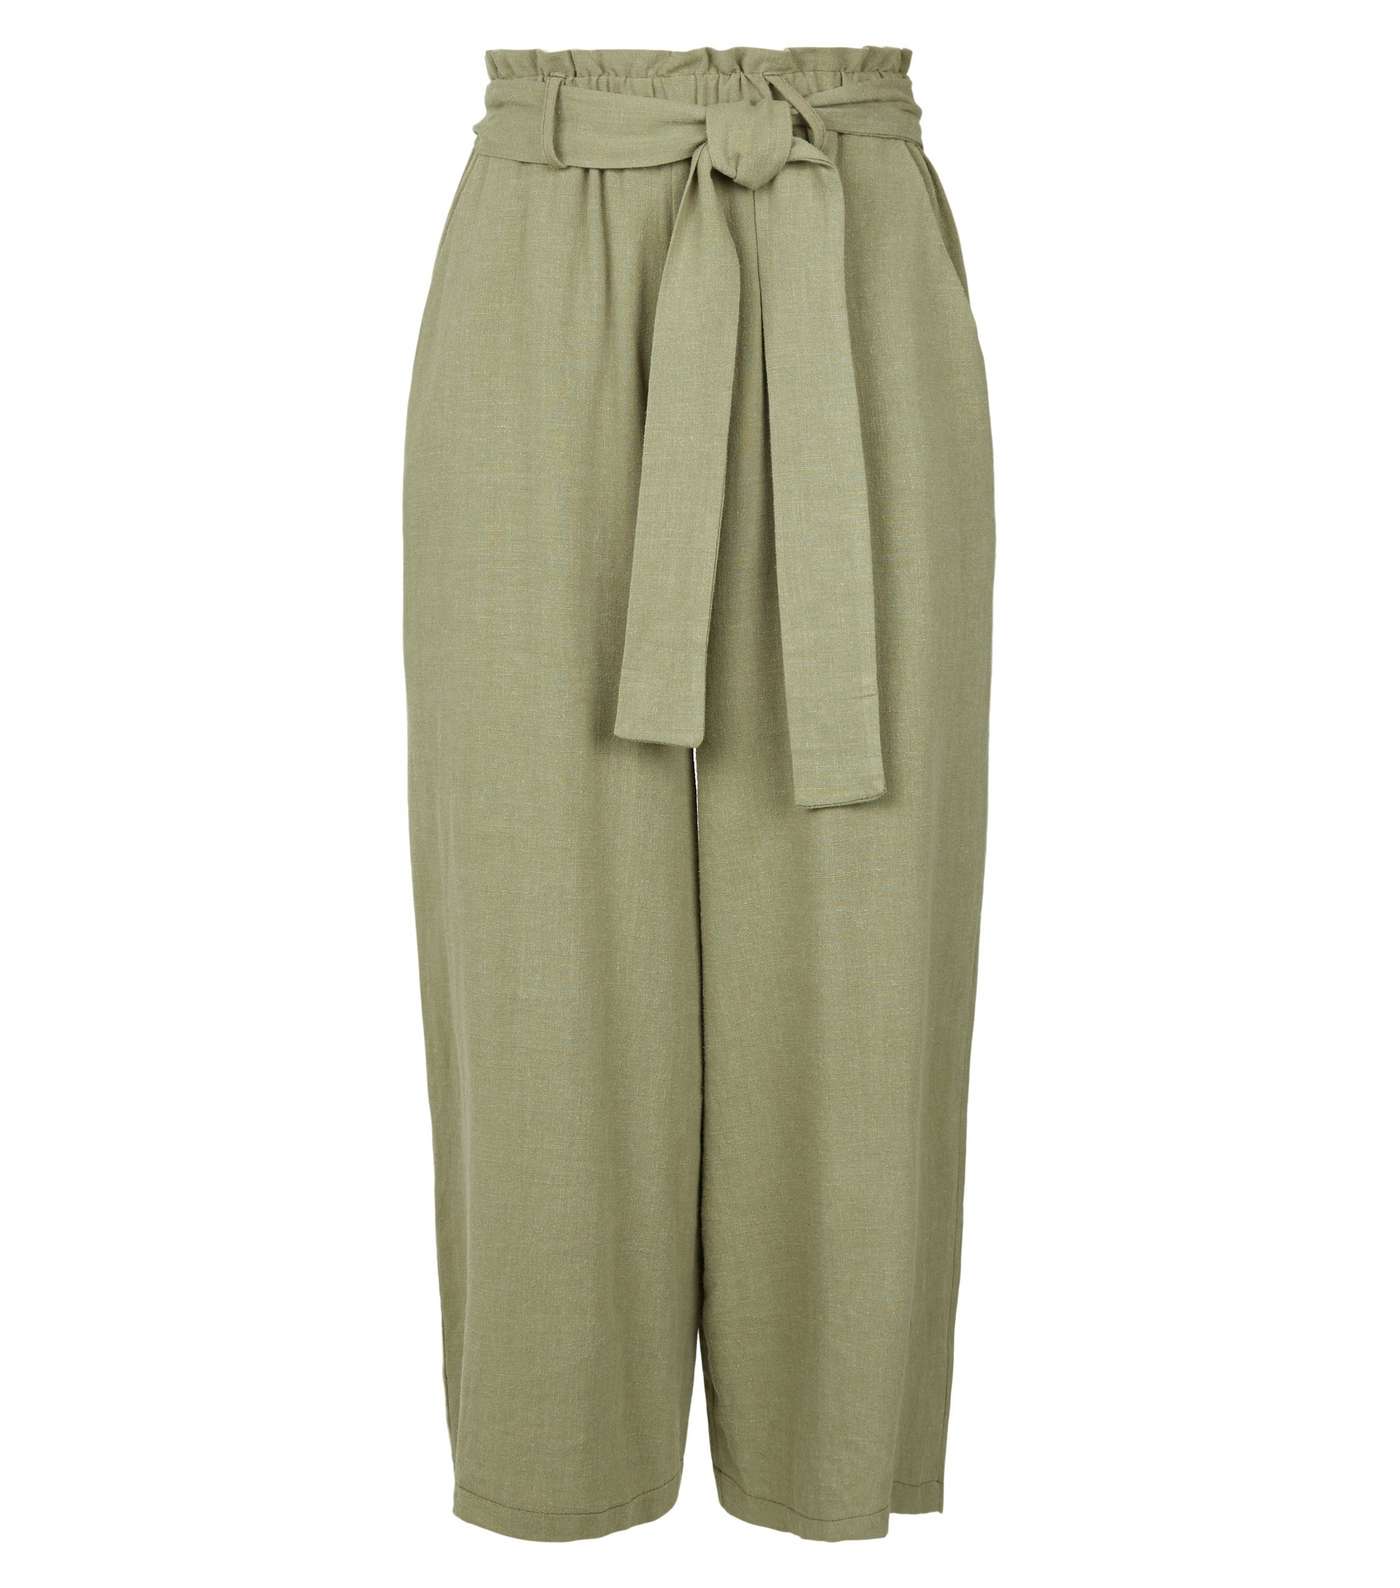 Khaki Linen Look High Waist Crop Trousers Image 4